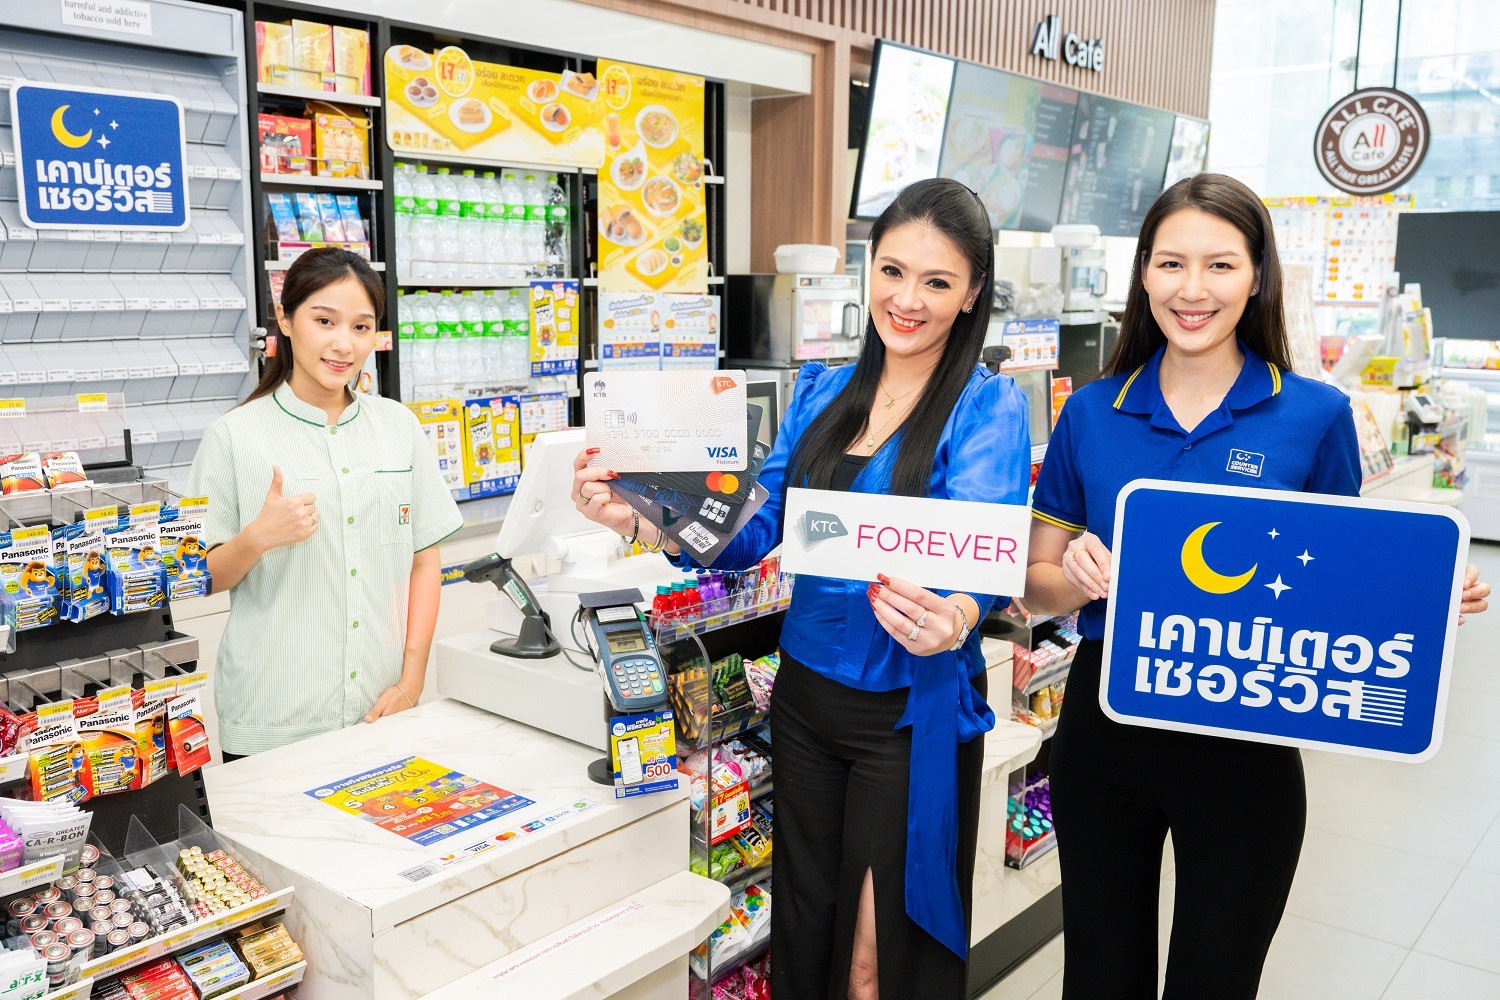 เคทีซีสร้างปรากฎการณ์ใหม่ในไทย ครั้งแรกกับการใช้คะแนนแทนเงินสดที่ 7-Eleven สุดว้าว! ทุก 10 คะแนน แทนเงิน 1 บาท